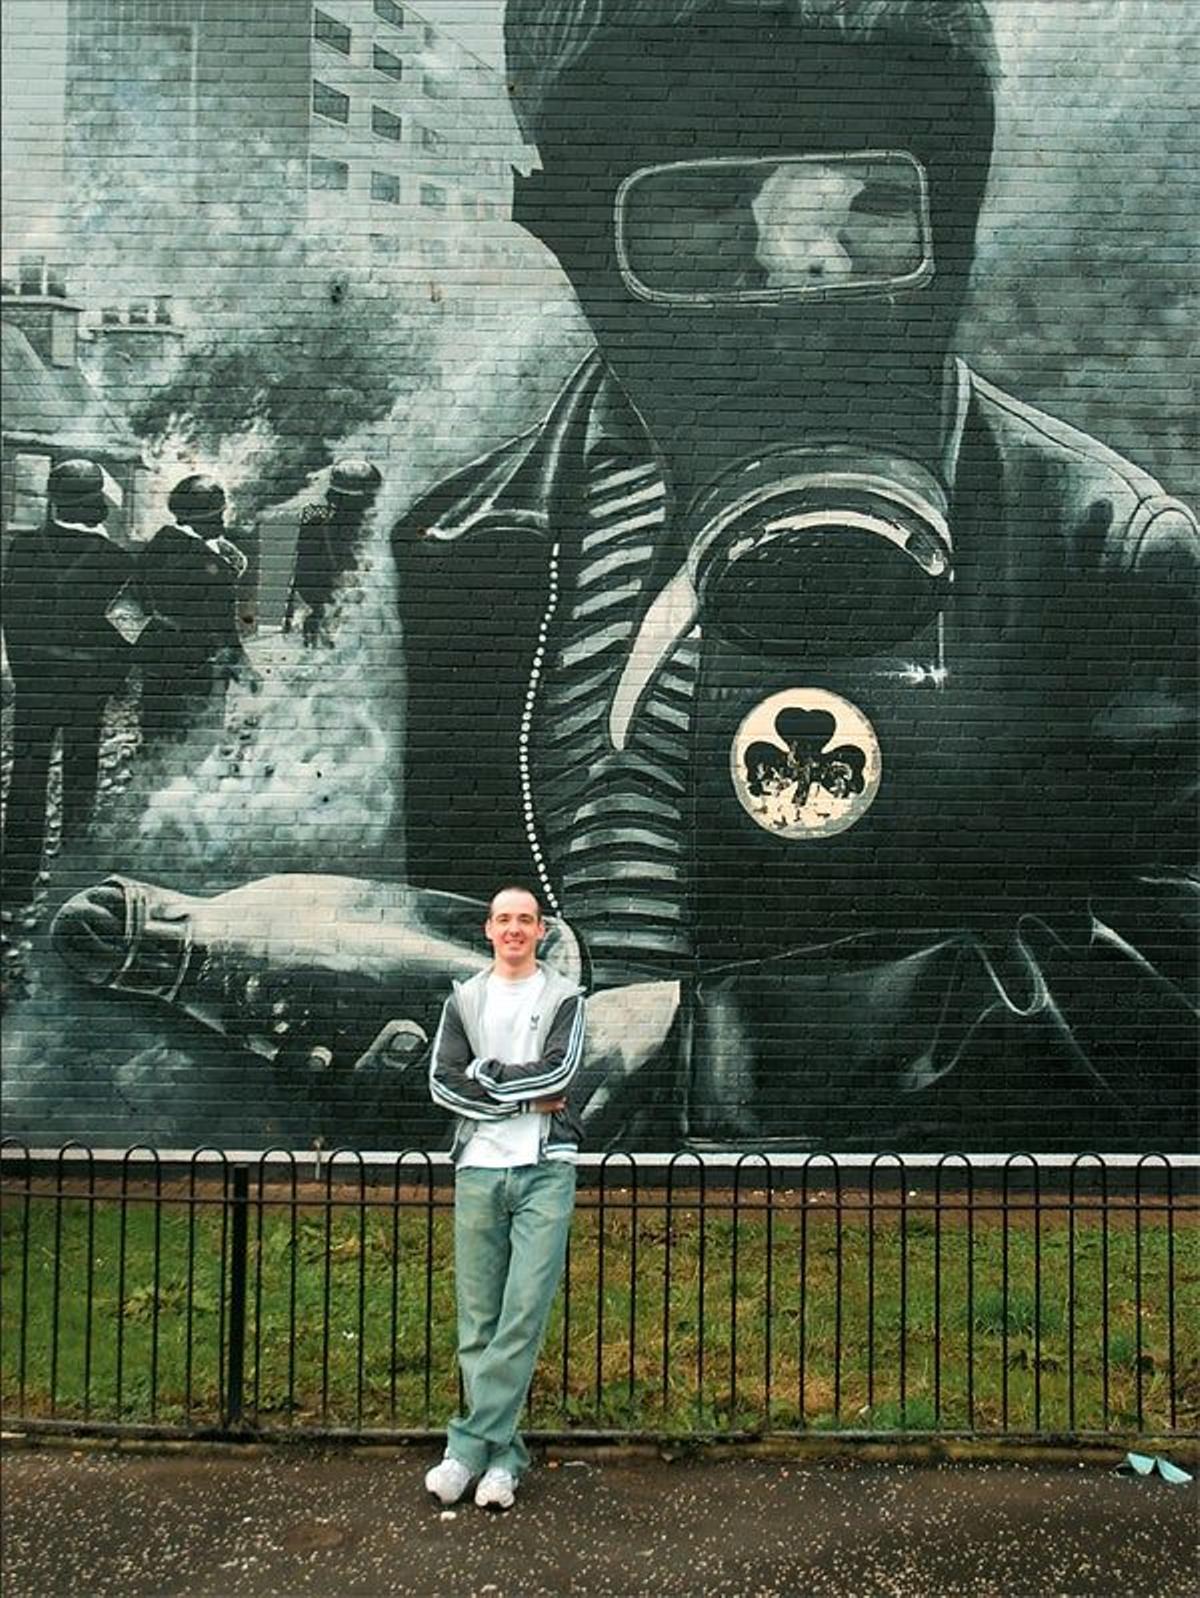 Los Murales de Rossville Street en Derry, plasman algunos de los turbulentos episodios que enfrentar